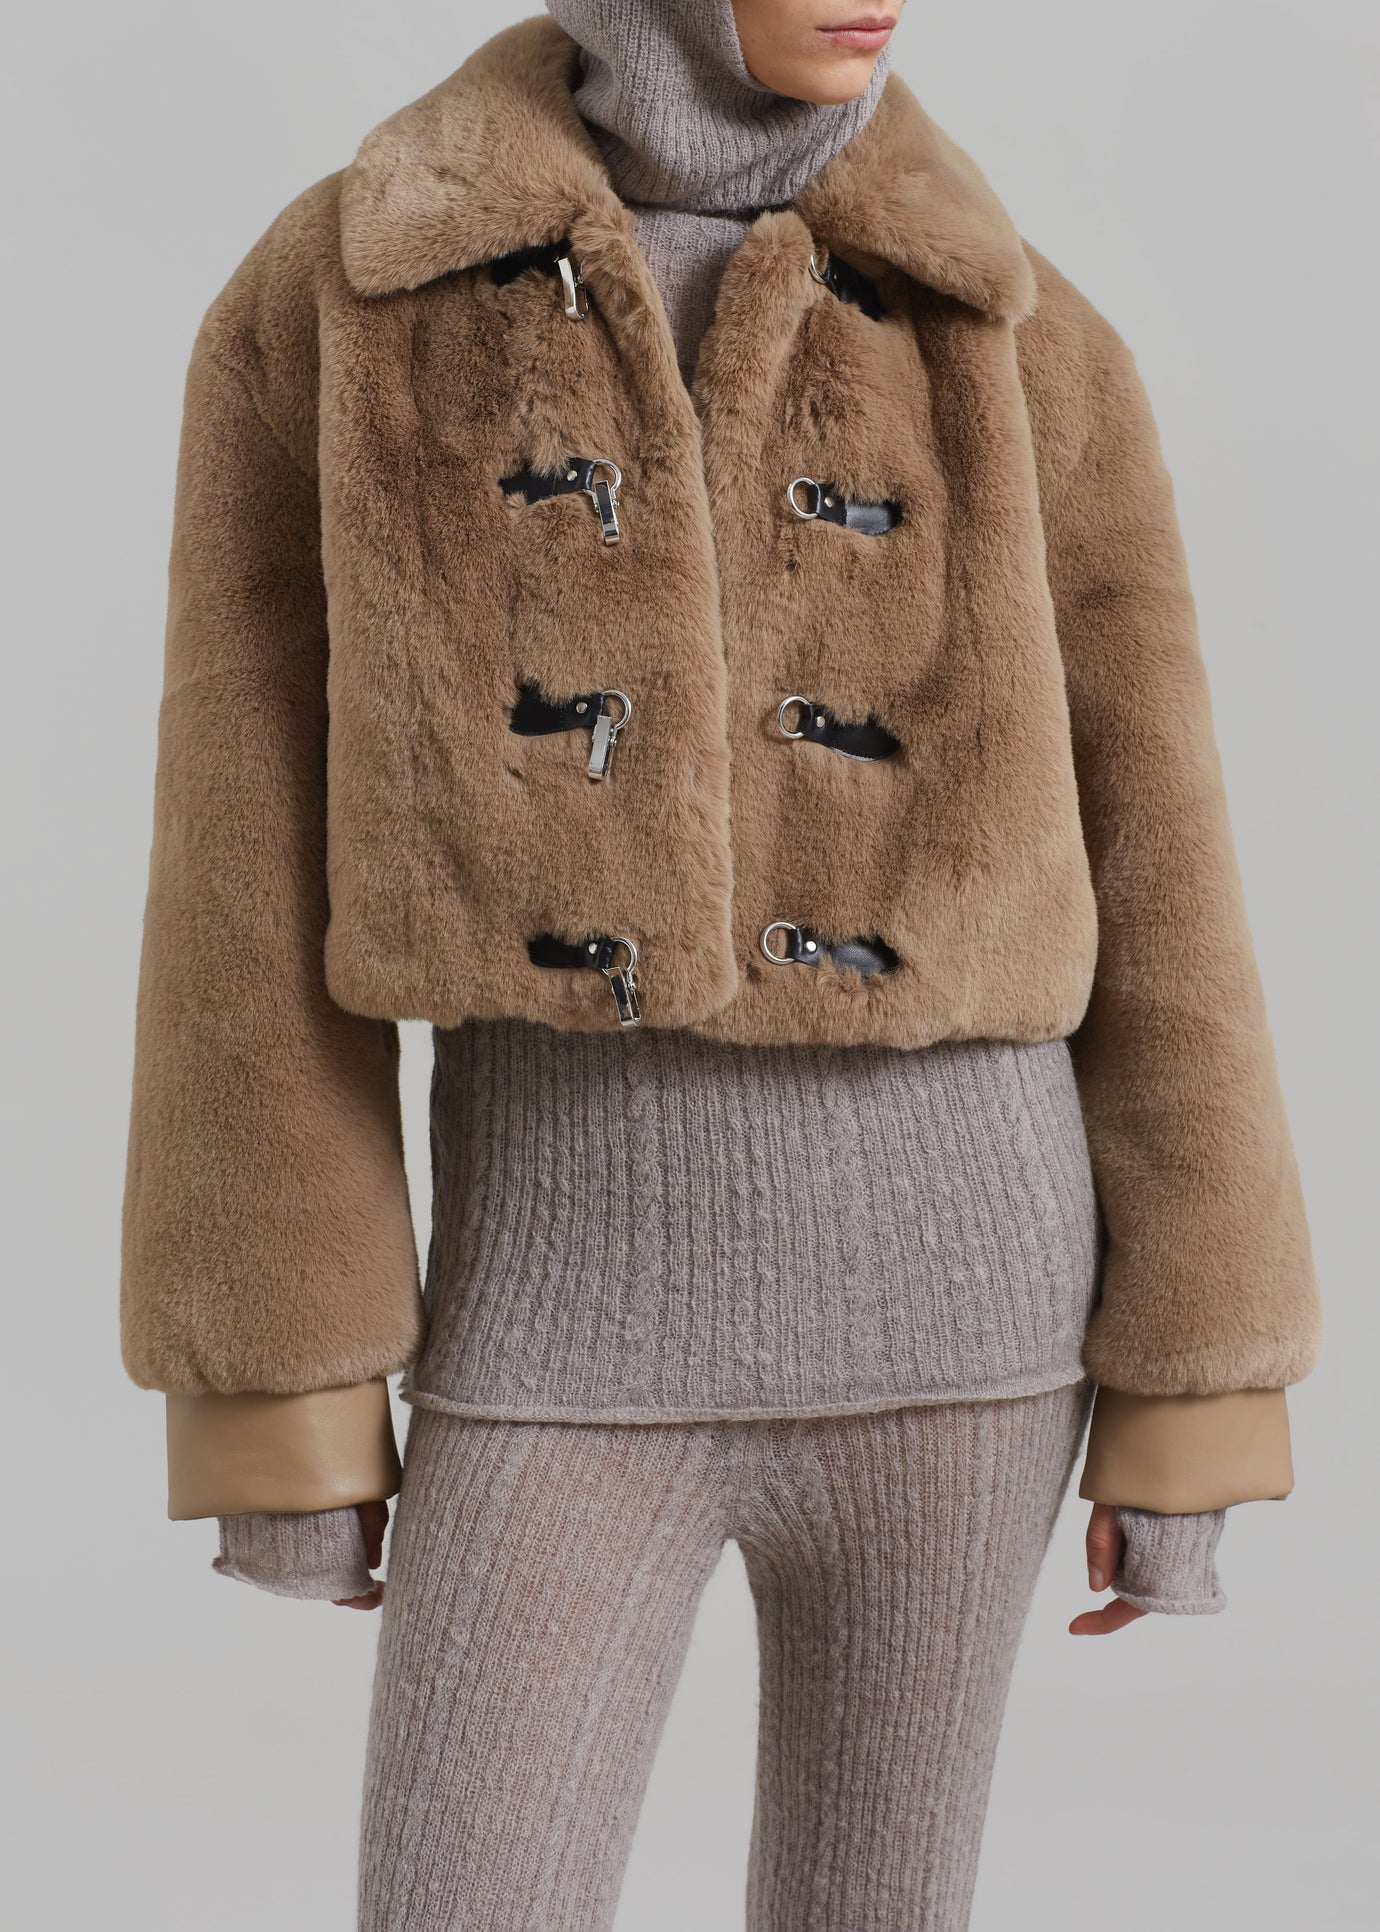 Liza Short Faux Fur Coat - Off White – The Frankie Shop